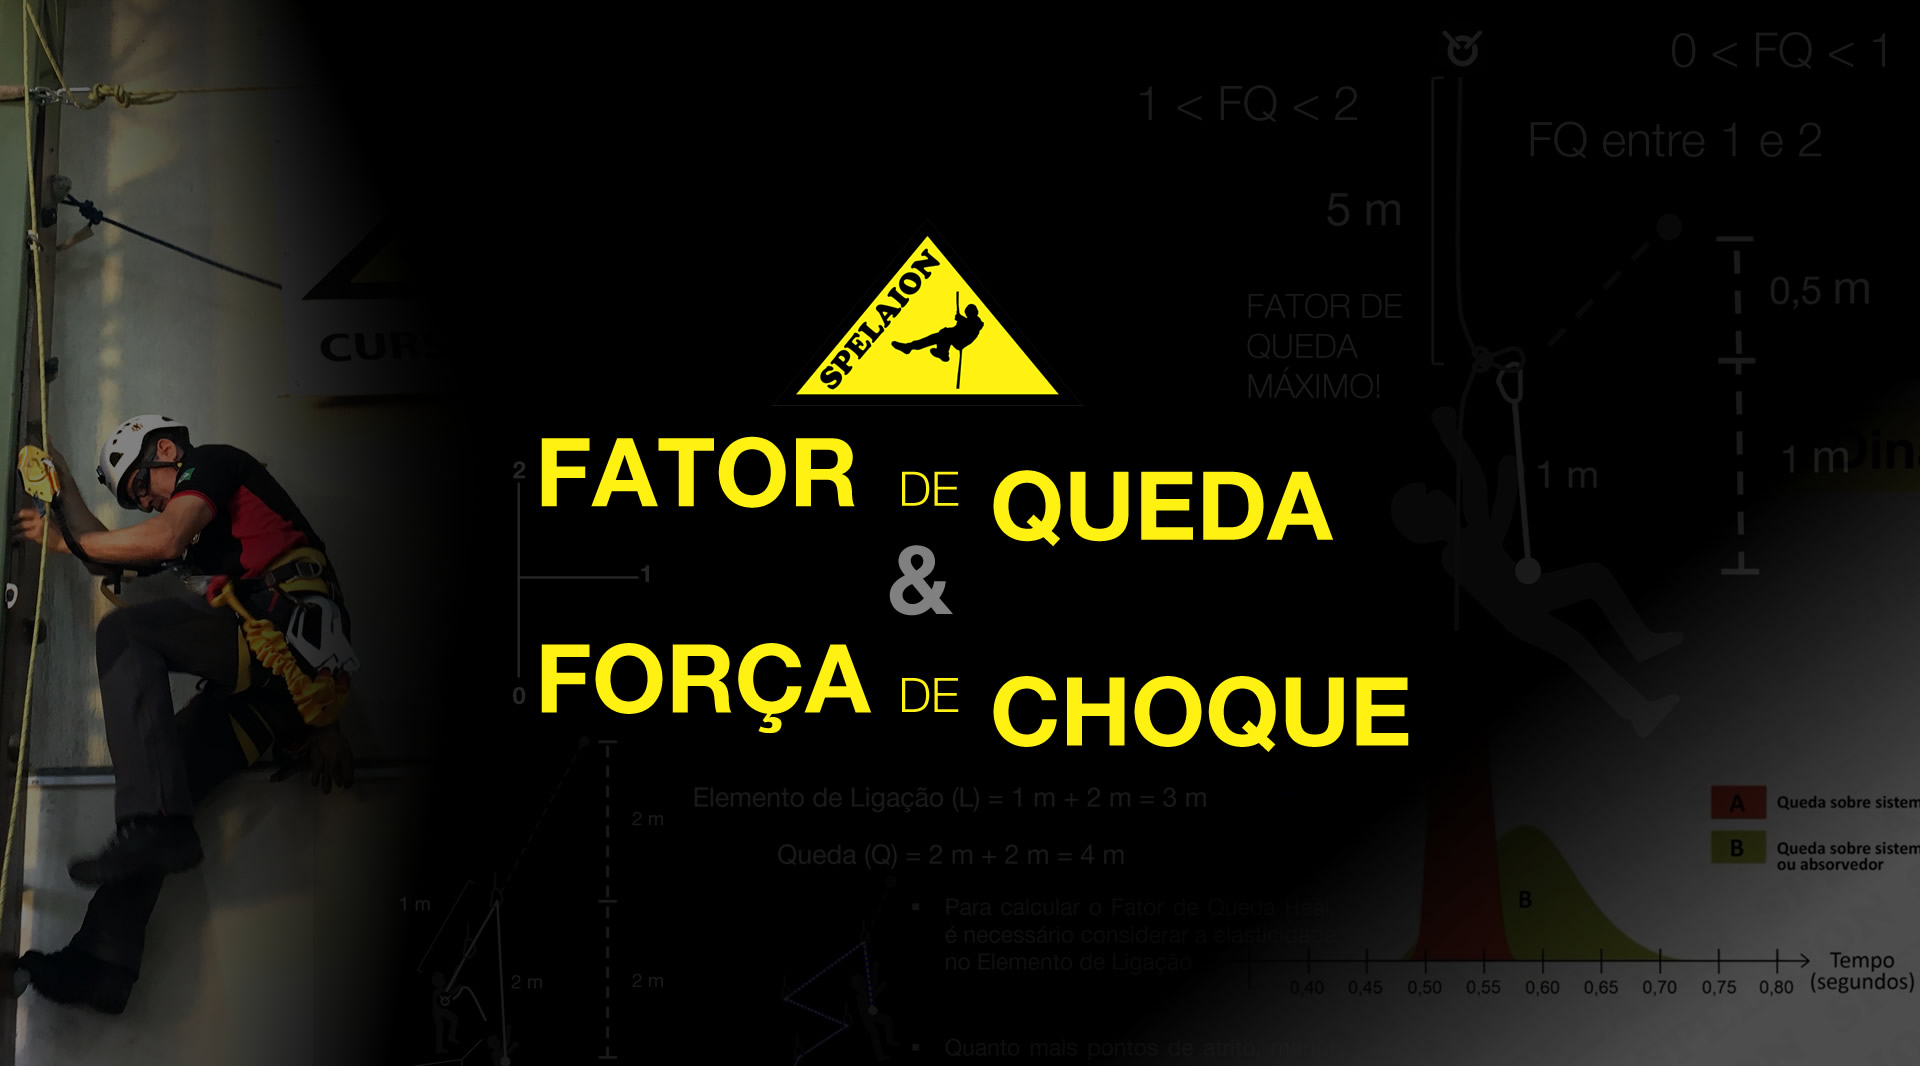 Curso Fator de Queda e Força de Choque ON-LINE - Acesse: ead.spelaion.com -  Loja Spelaion - Representante oficial da marca Petzl no Brasil